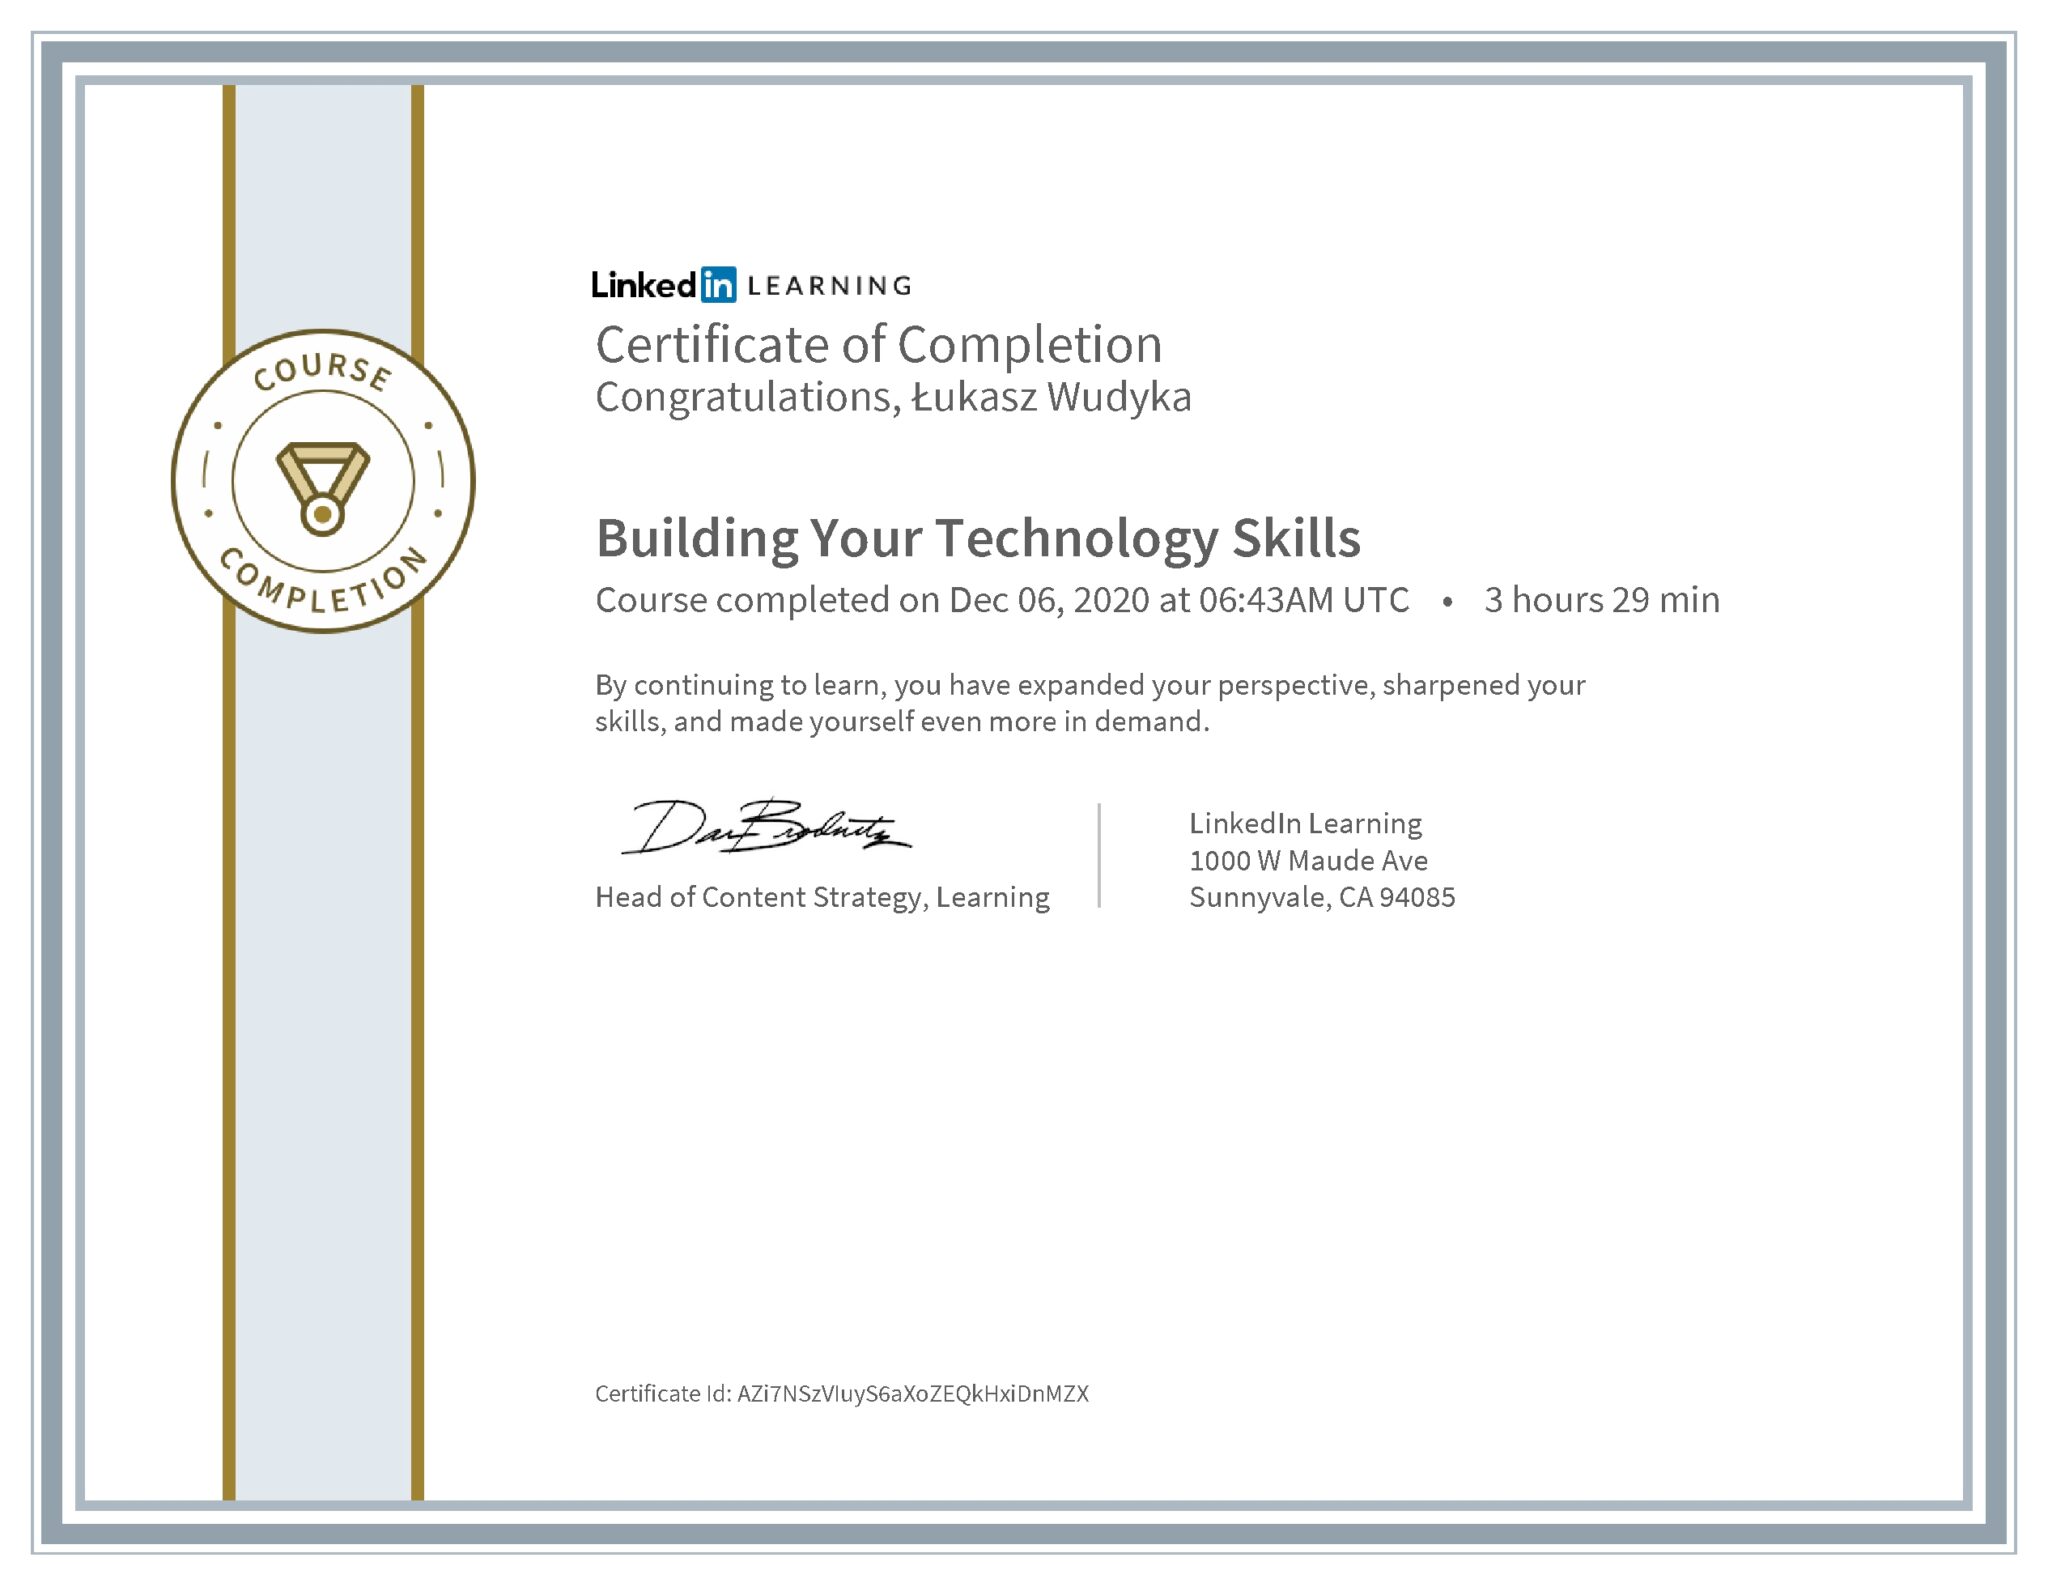 Łukasz Wudyka certyfikat LinkedIn Building Your Technology Skills